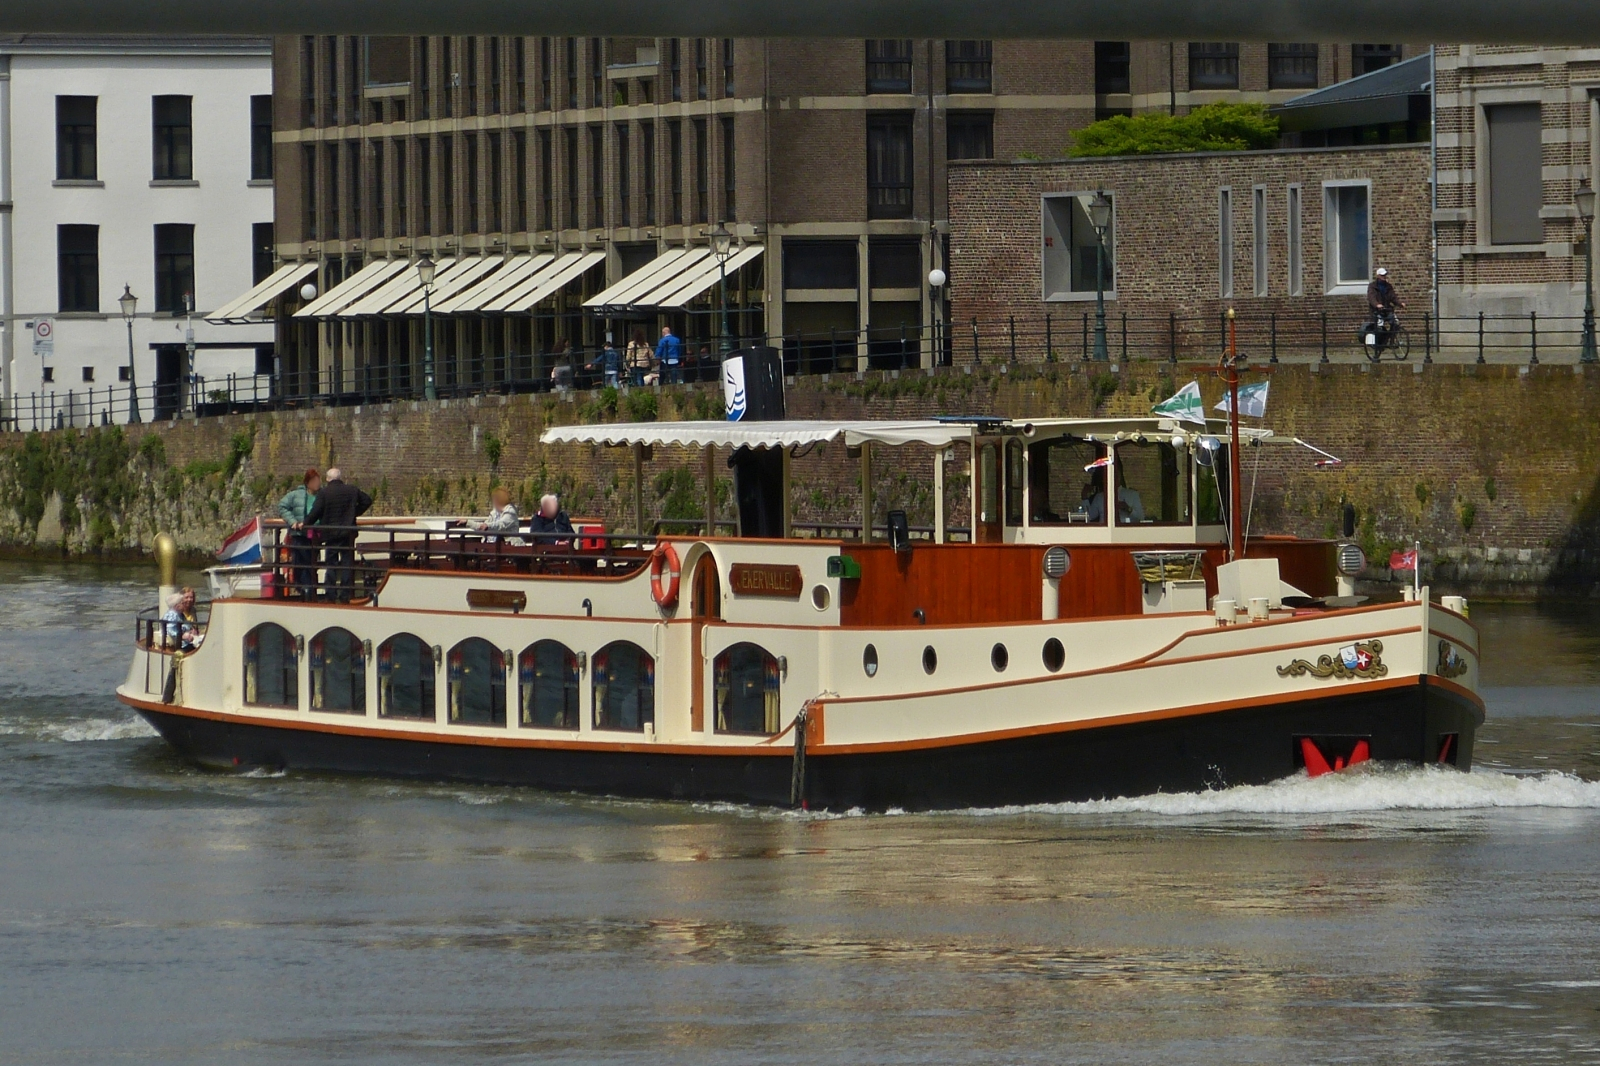 Ausflugschiff JEKERVALLEI der Rederei Stiphout, zu Berg in Maastricht, während ihrer Fluss Rundfahrt auf der Maas. 05.2023